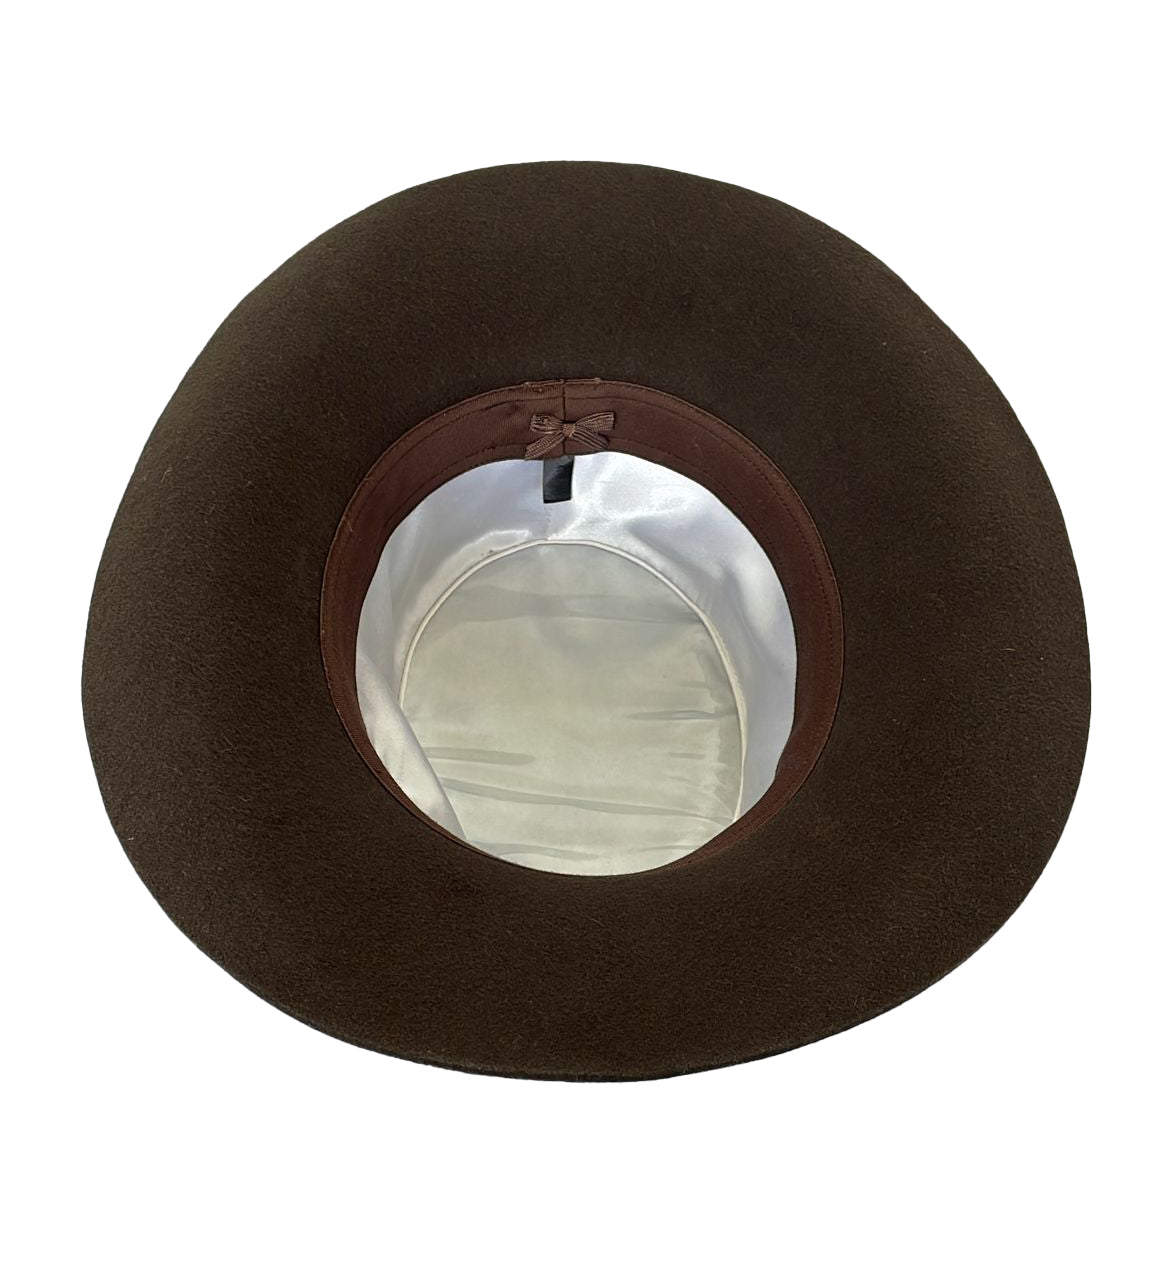 Formstabiler Outdoor Filz-Hut, allwettertauglich mit breiter Krempe in braun und taupe